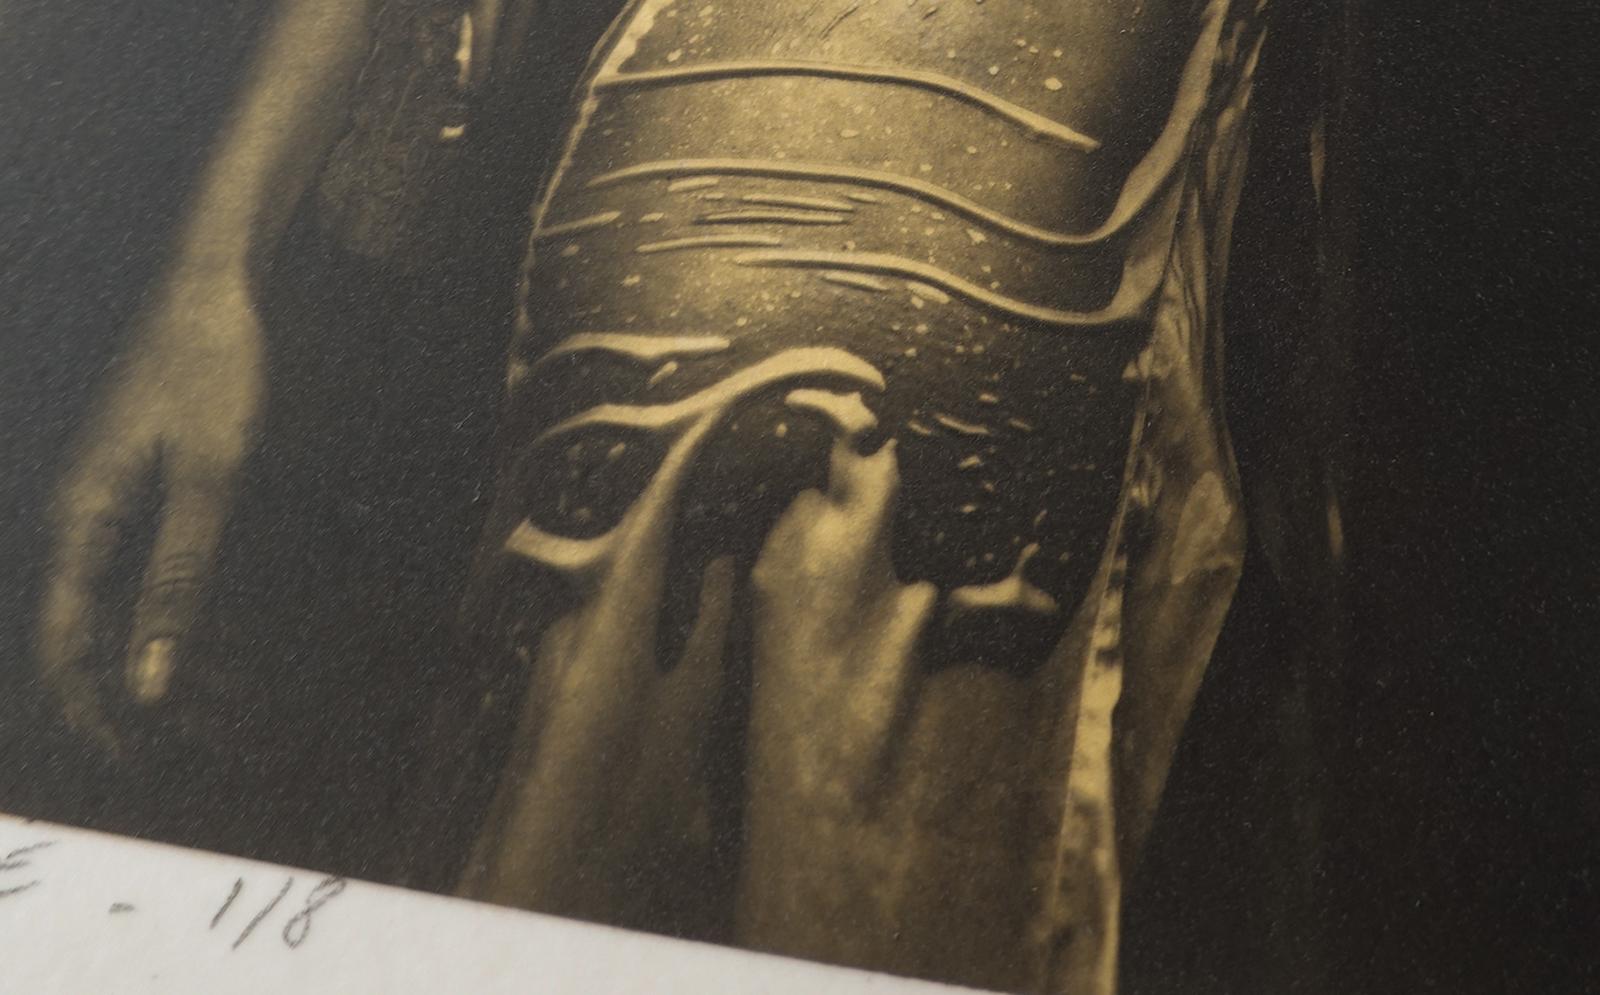 Nathalie -  Platin-Palladium-Druck über 24 Karat Blattgold auf Vellum-Papier 
Ausgabe 1 von 8 , plus 2 AP ( Größe 2 )
Druck: 2016

Frau in einem nassen Seidenbademantel, der ihre weibliche Form enthüllt, sinnliche Pose.
Signiert von Ian Sanderson